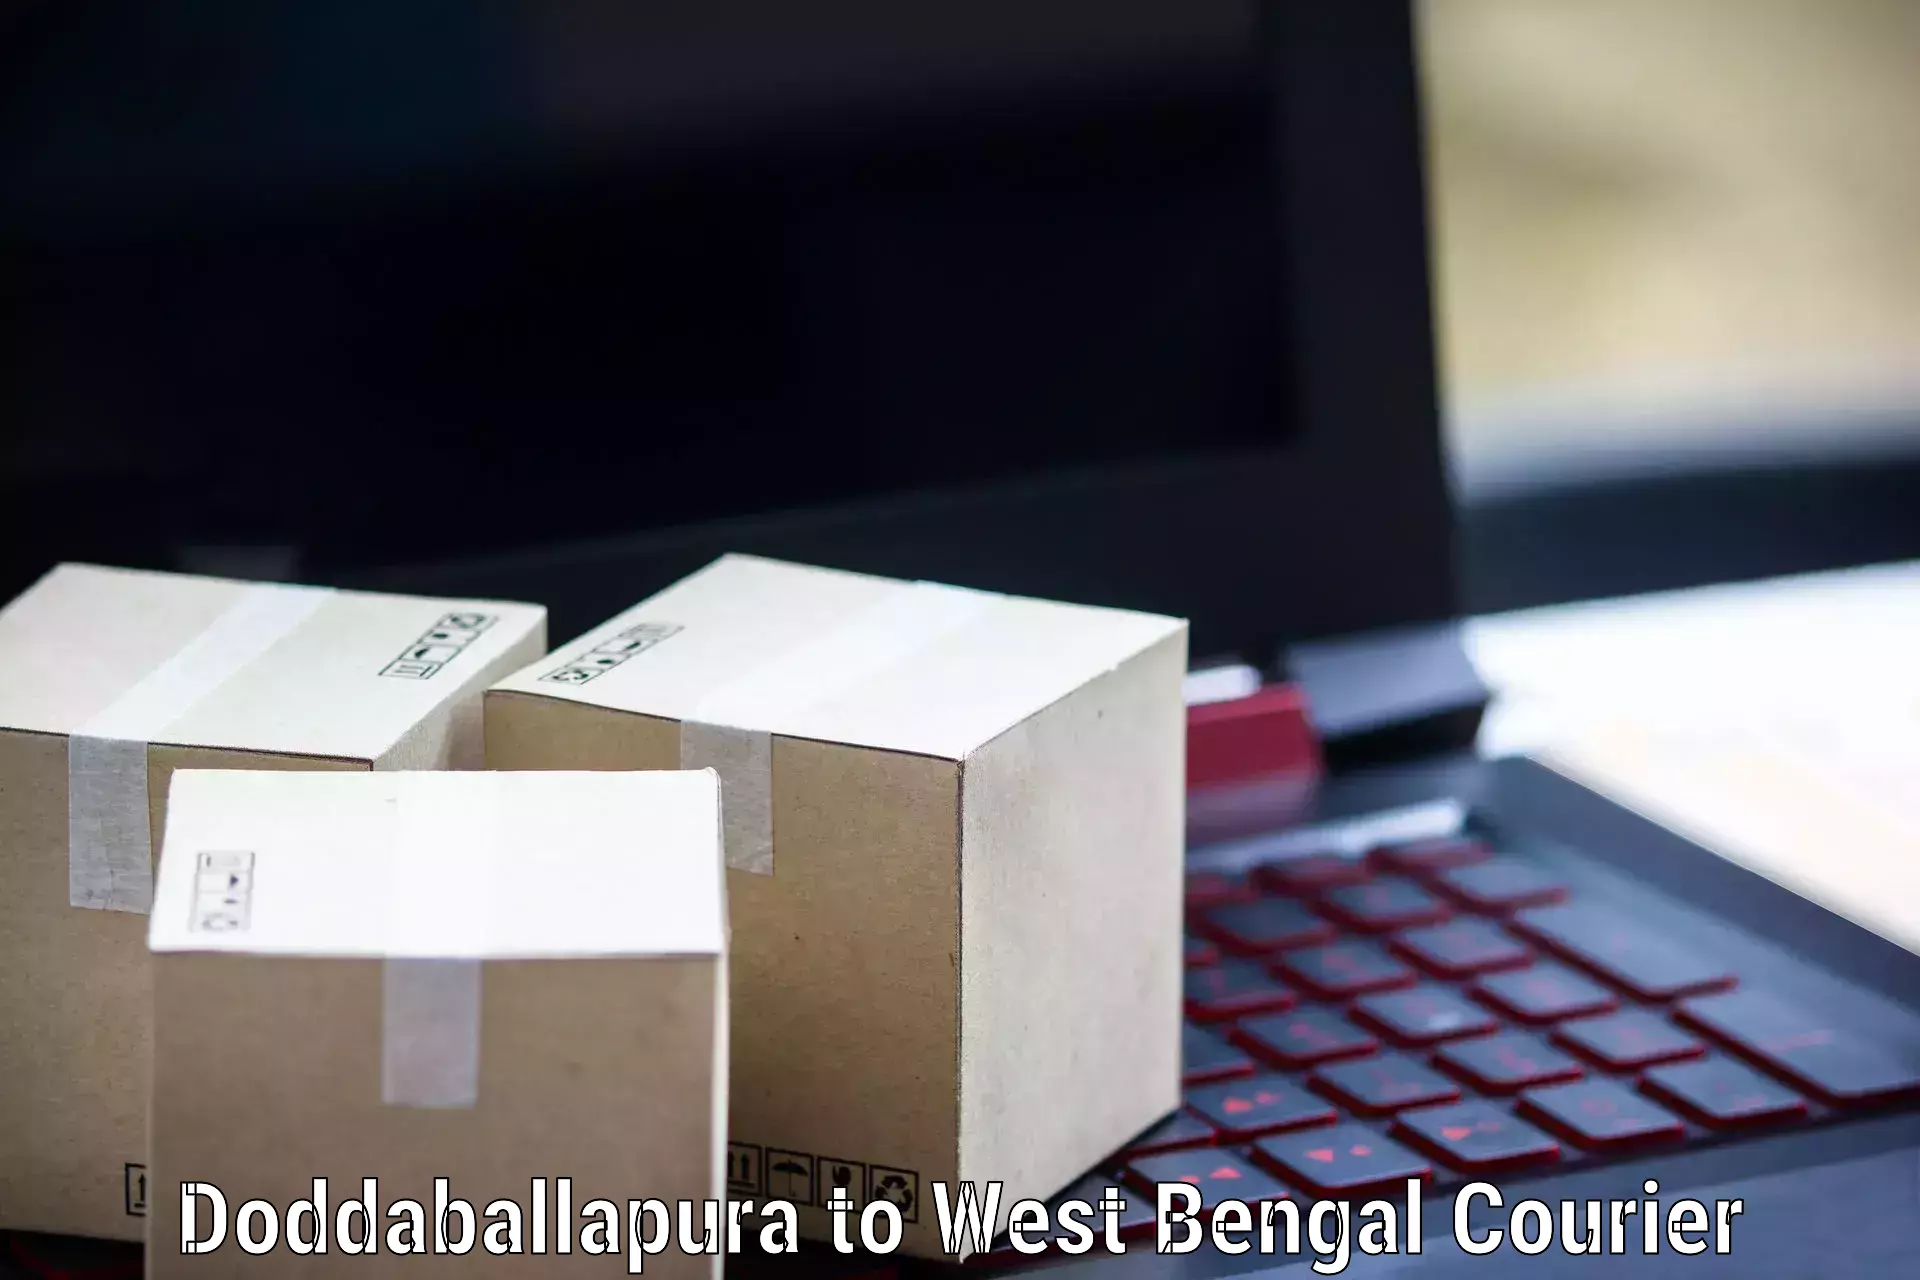 Business shipping needs Doddaballapura to West Bengal